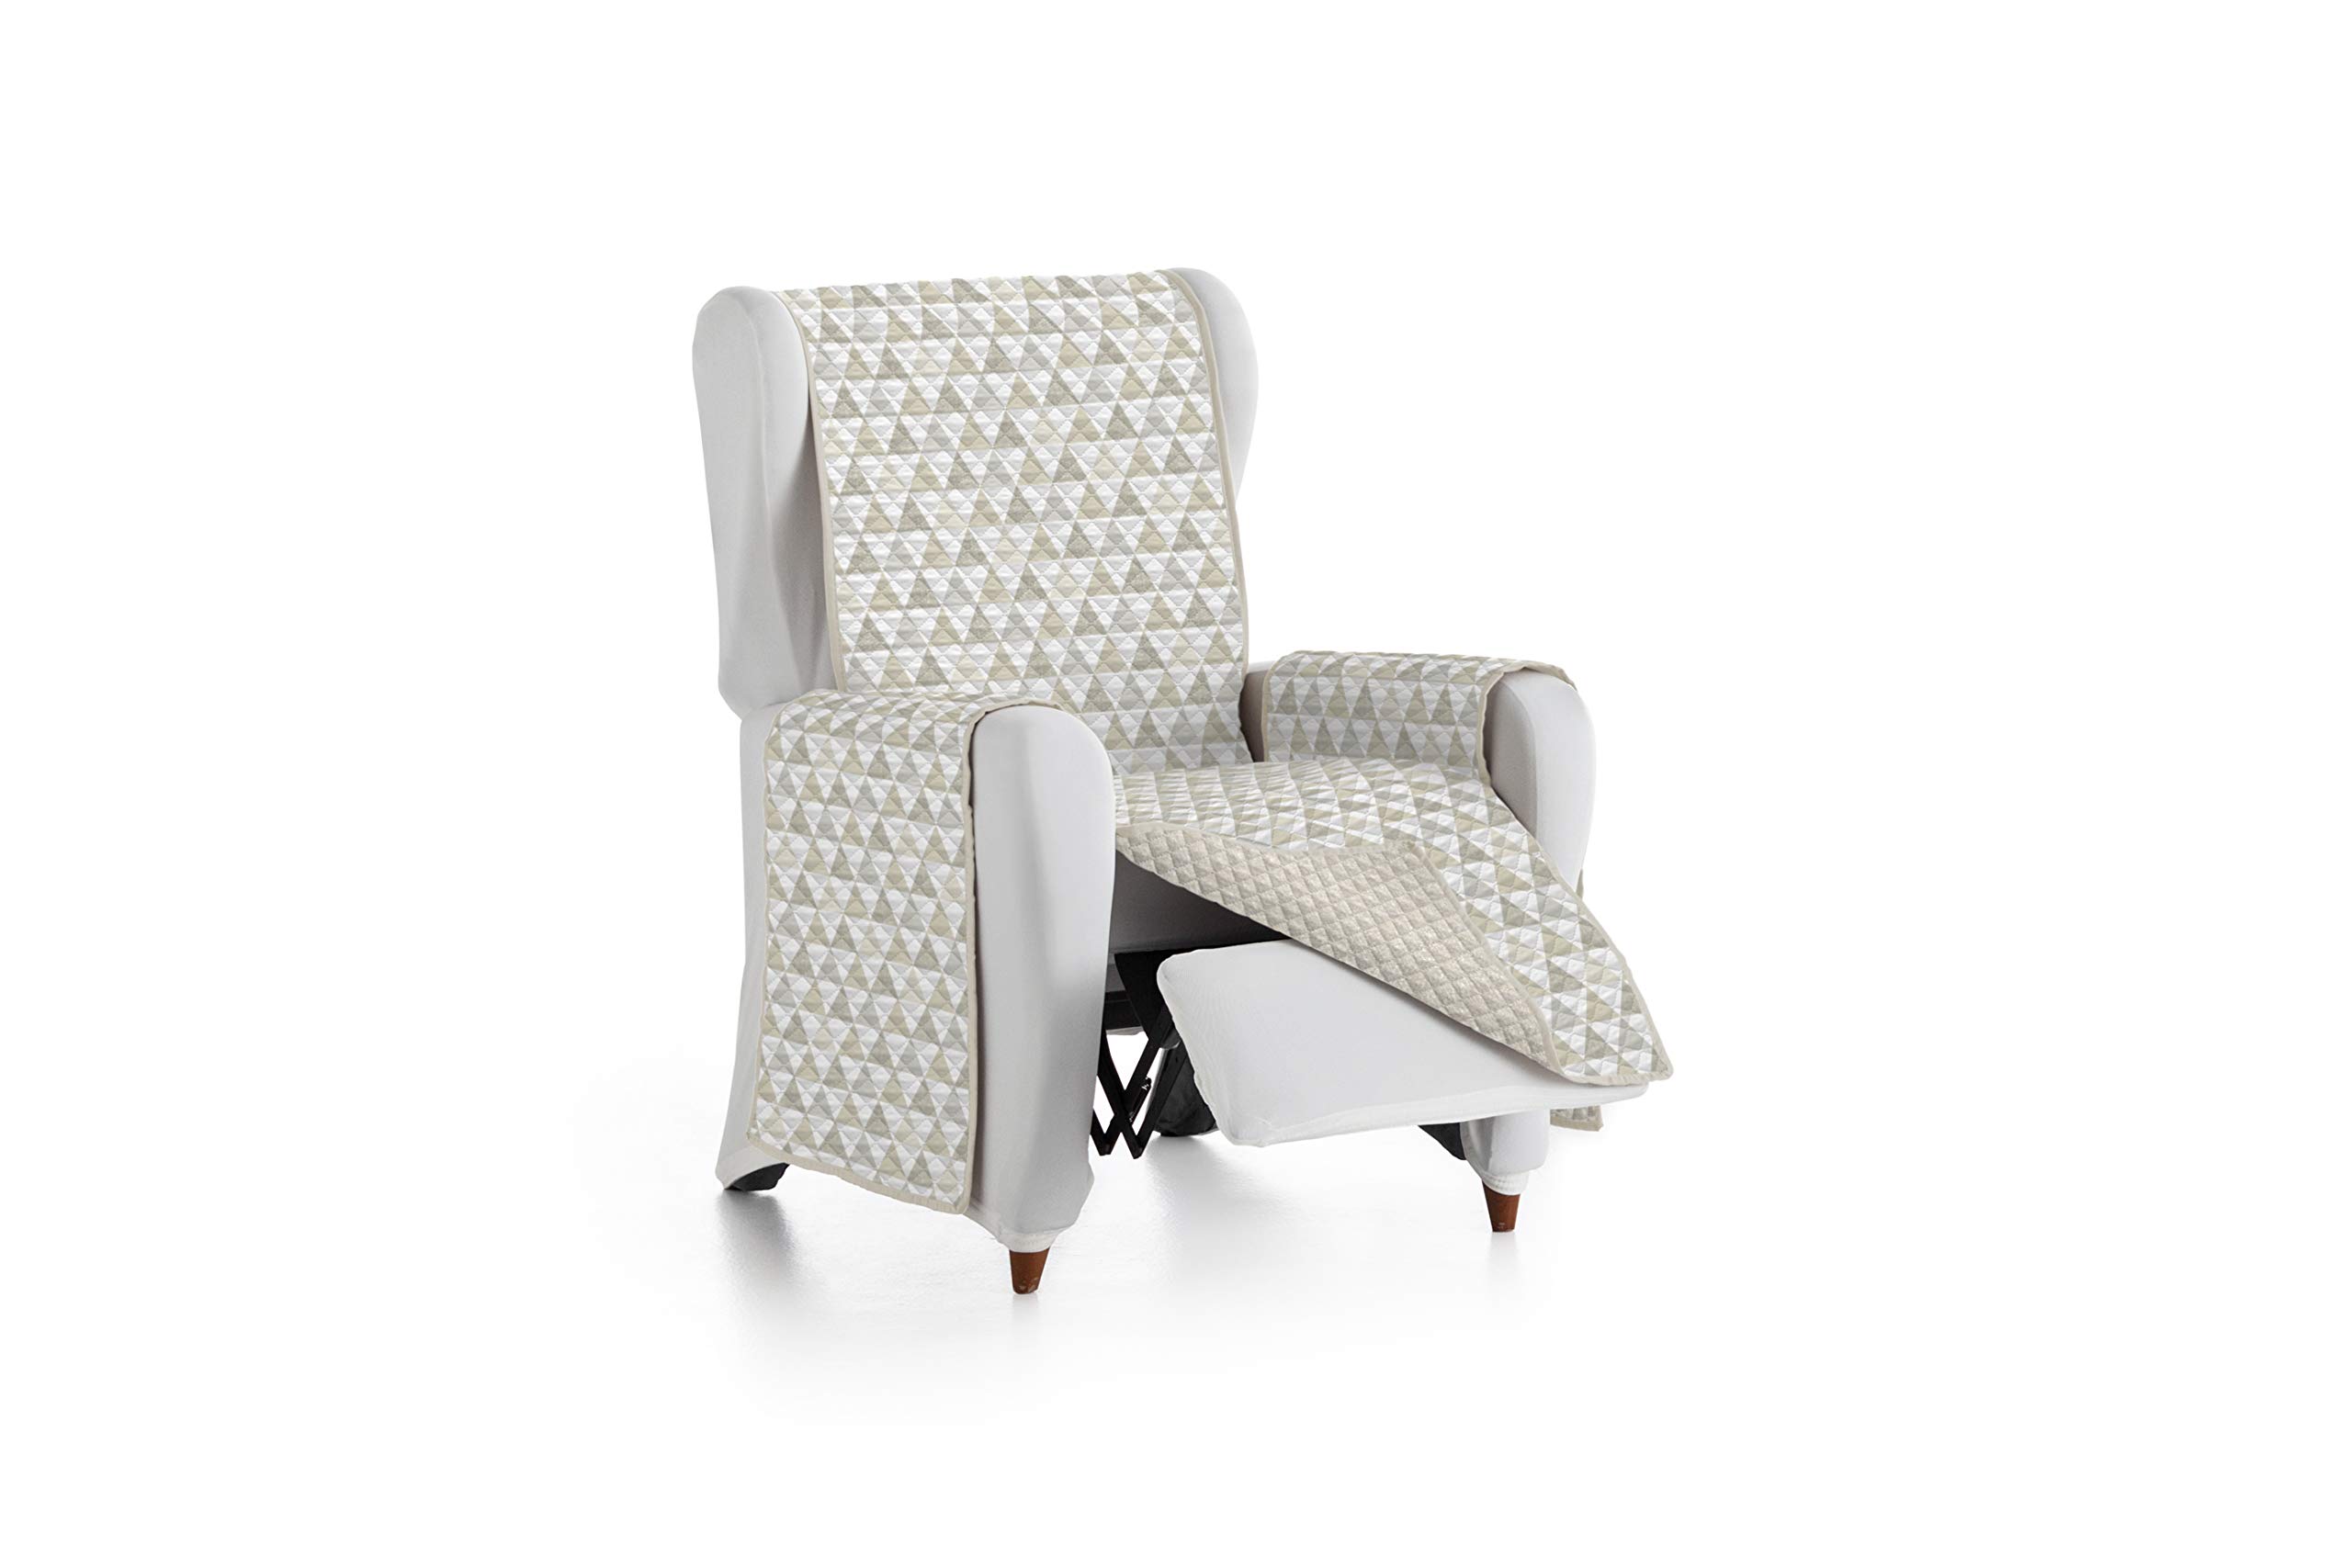 Eysa Nordic Sofa überwurf, Polyester, C/1 beige-beige, 1 Sessel 55cm. Geeignet für Sofas von 60 bis 110 cm